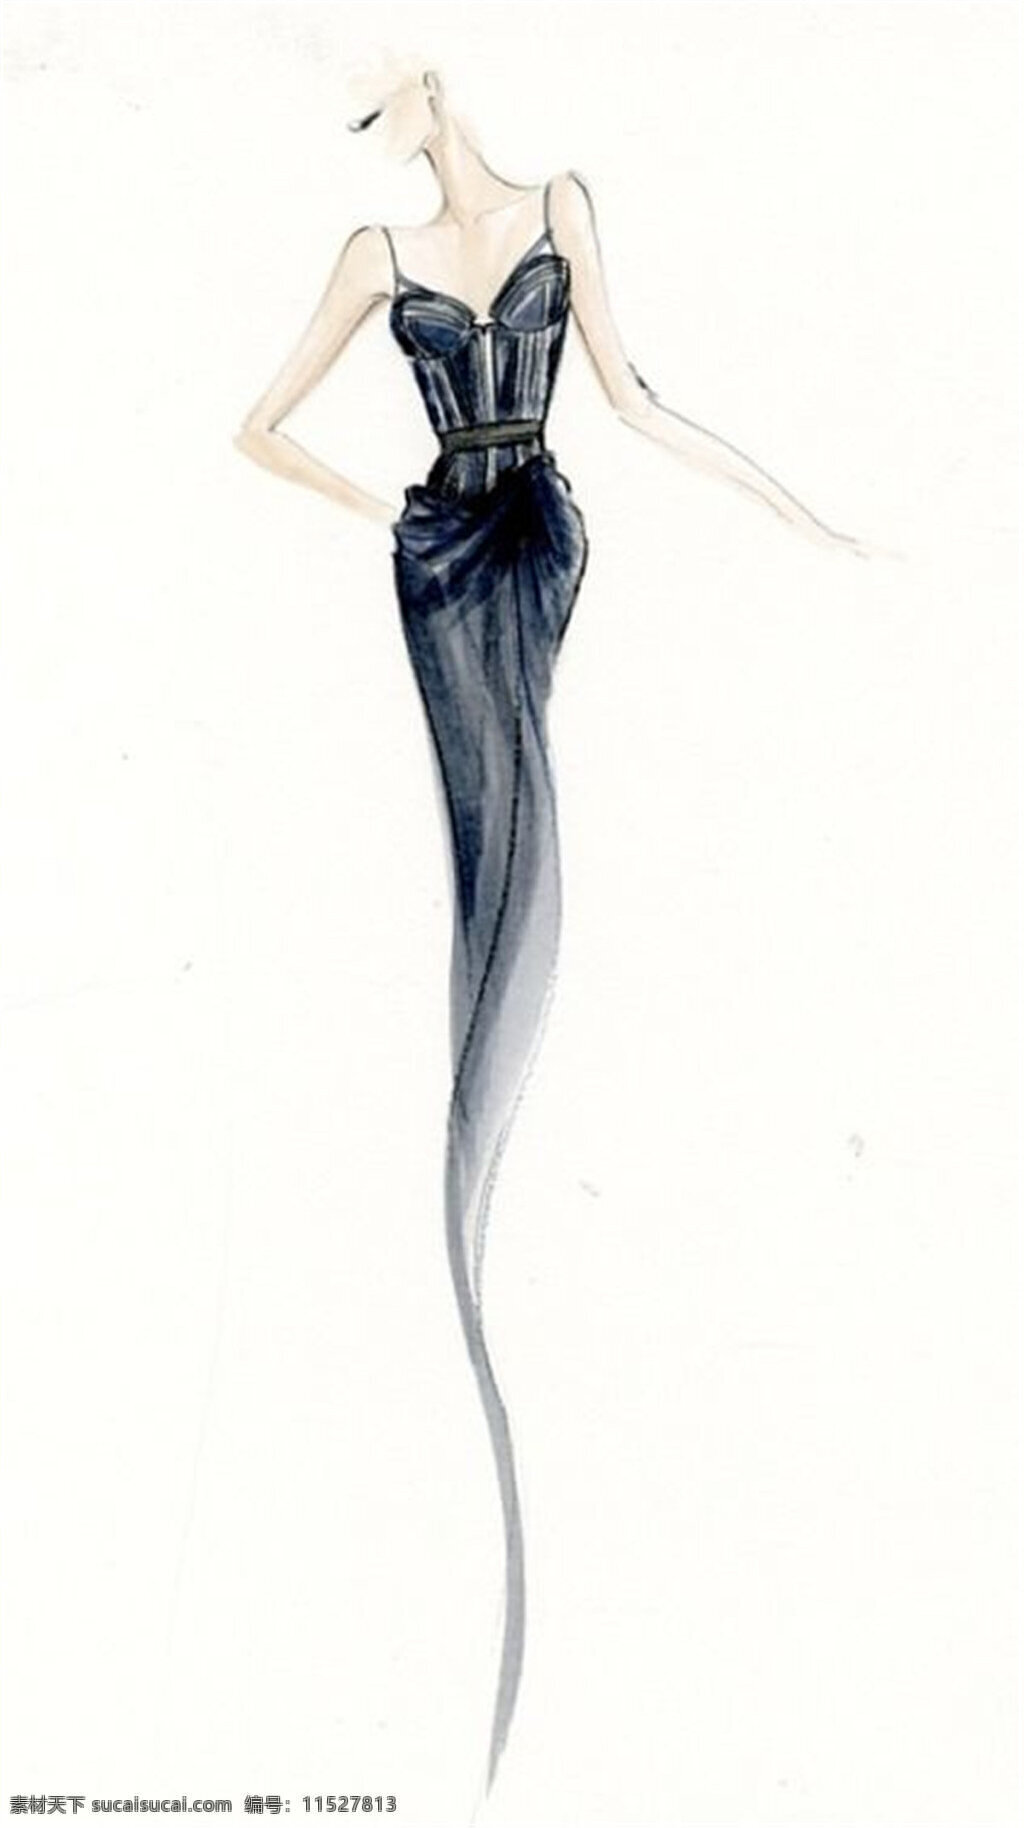 黑色吊带裙 服装设计 时尚女装 职业女装 职业装 女装设计 效果图 短裙 衬衫 服装 服装效果图 连衣裙